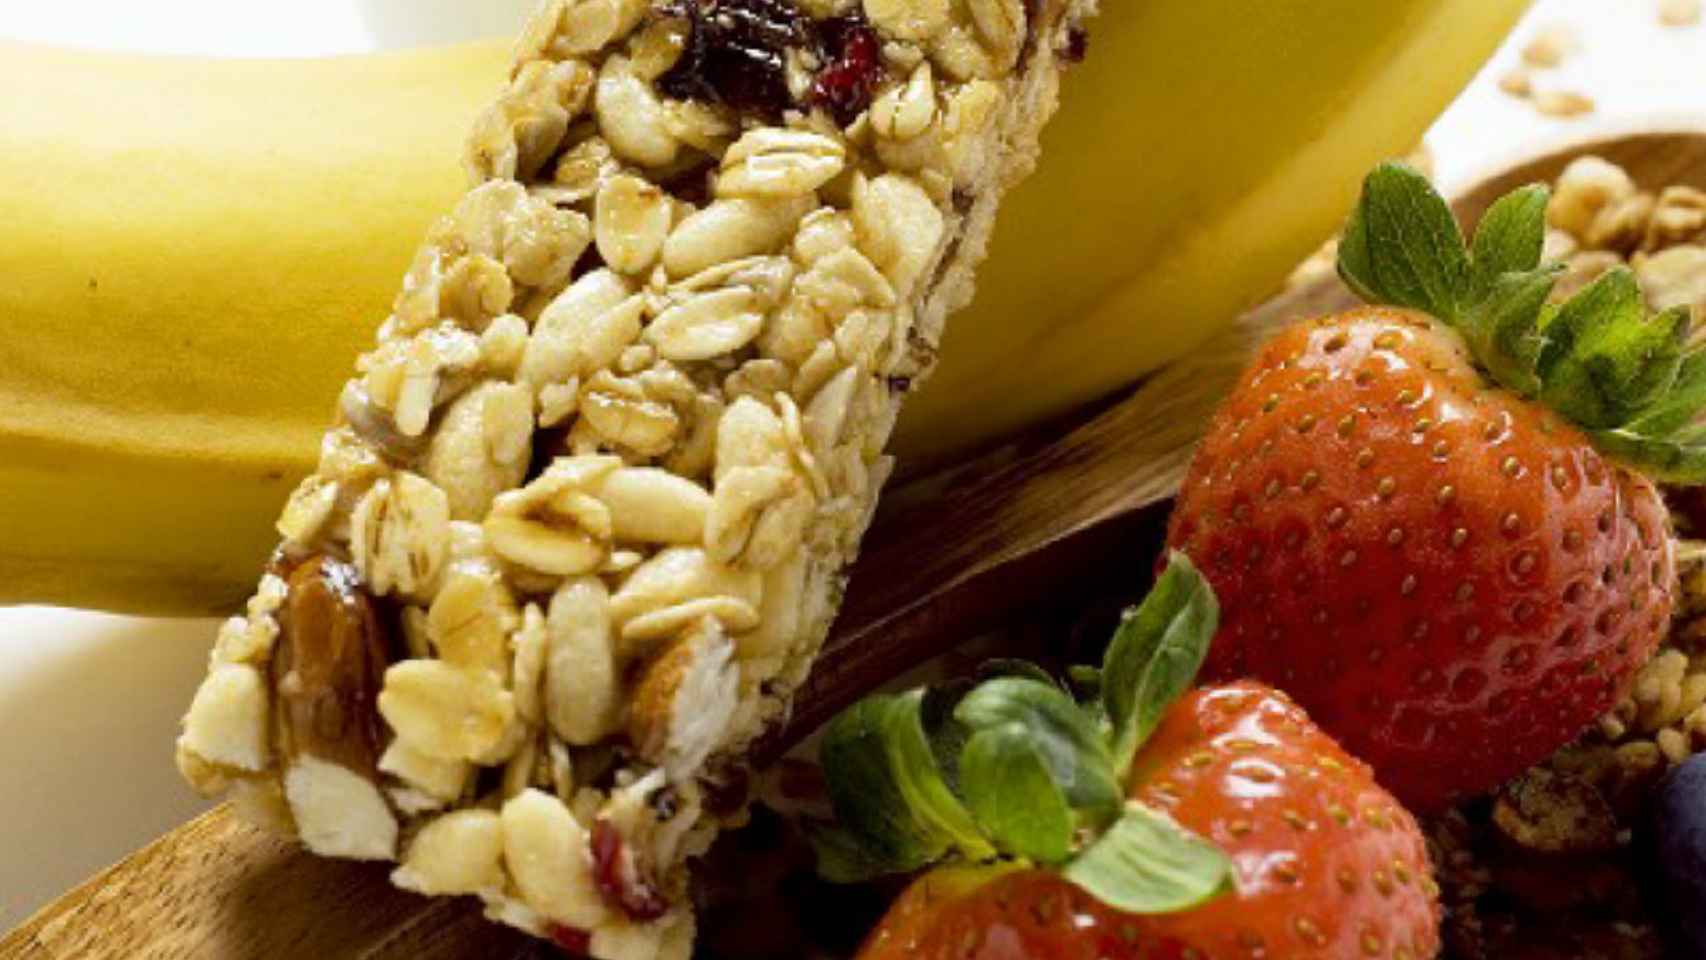 Las barritas de cereales o frutos secos tienen fama de saludable cuando no lo son.